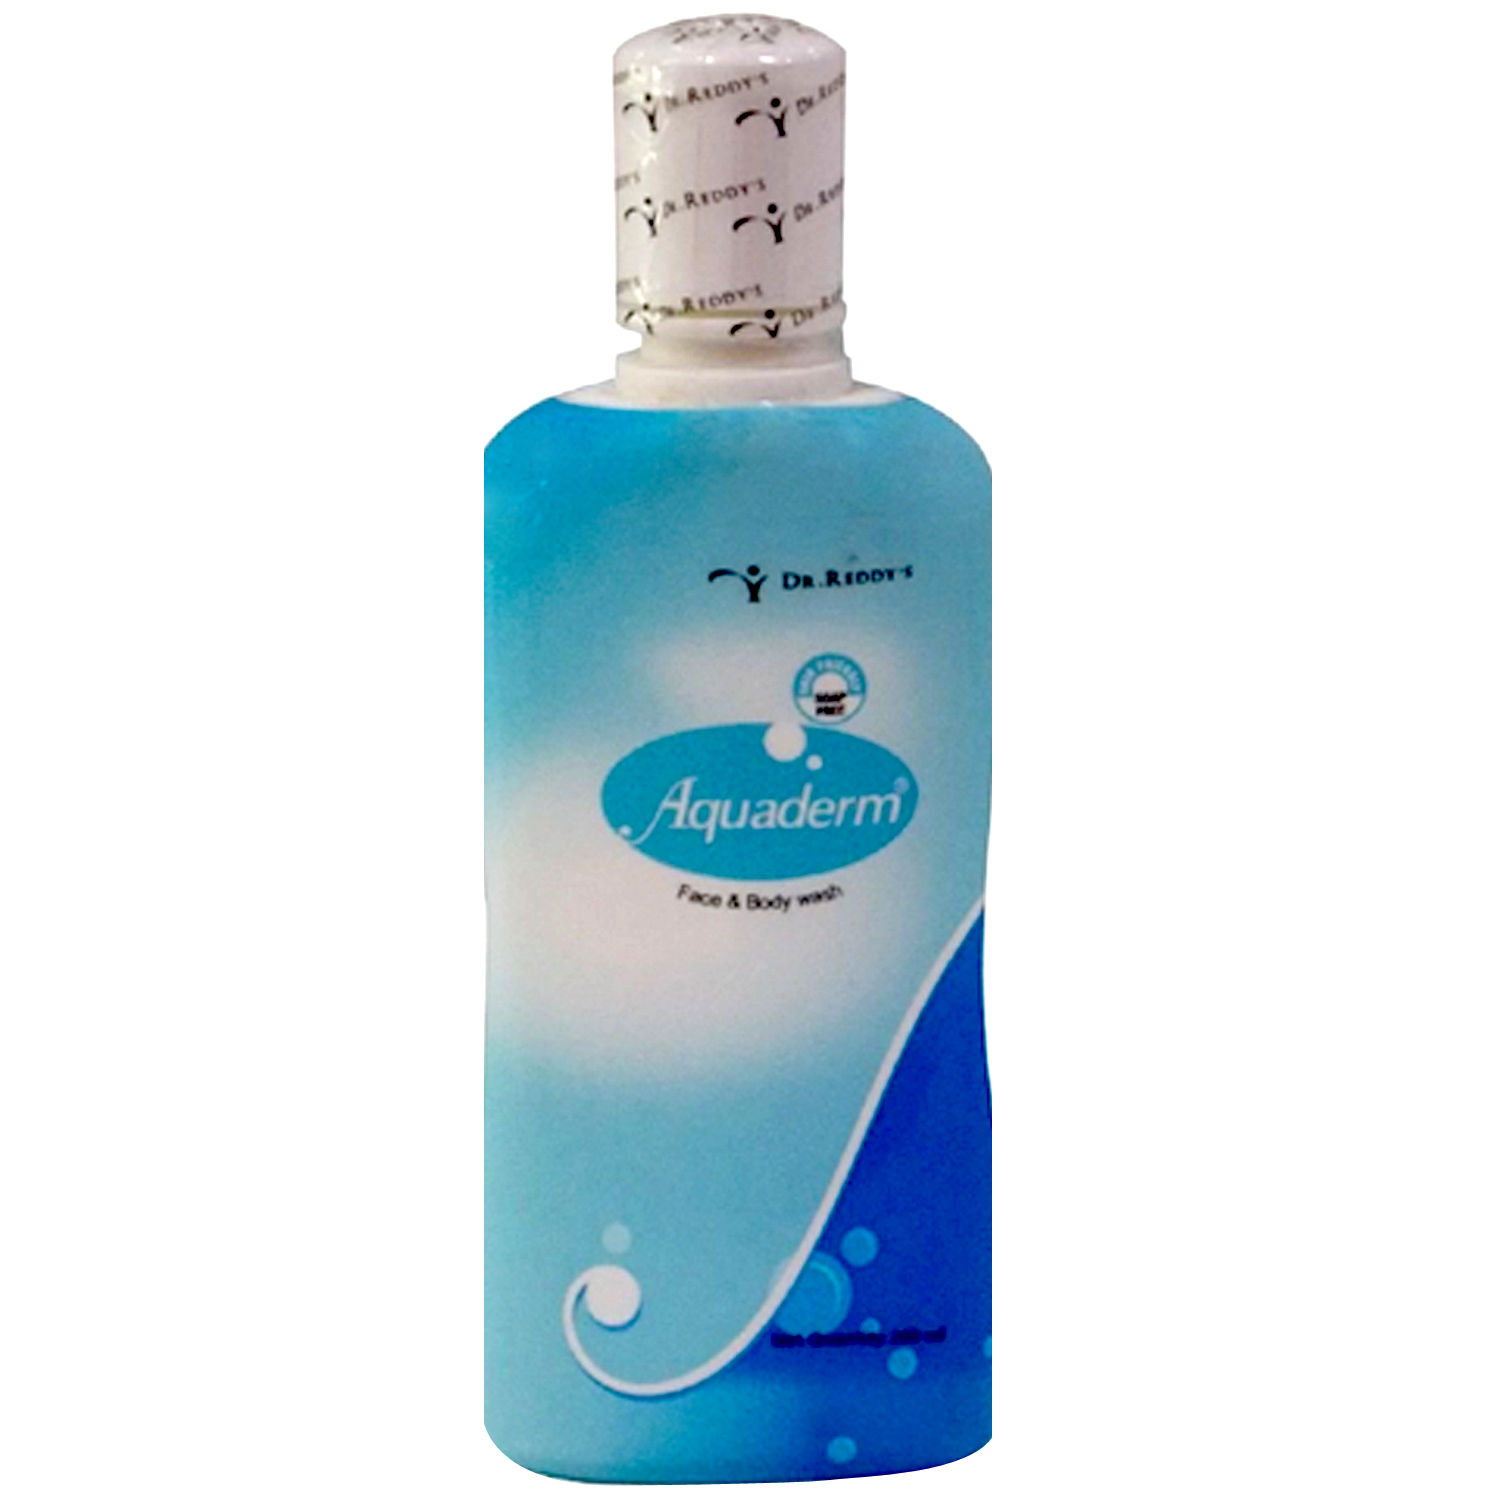 Buy Aquaderm Face & Body Wash, 200 ml Online